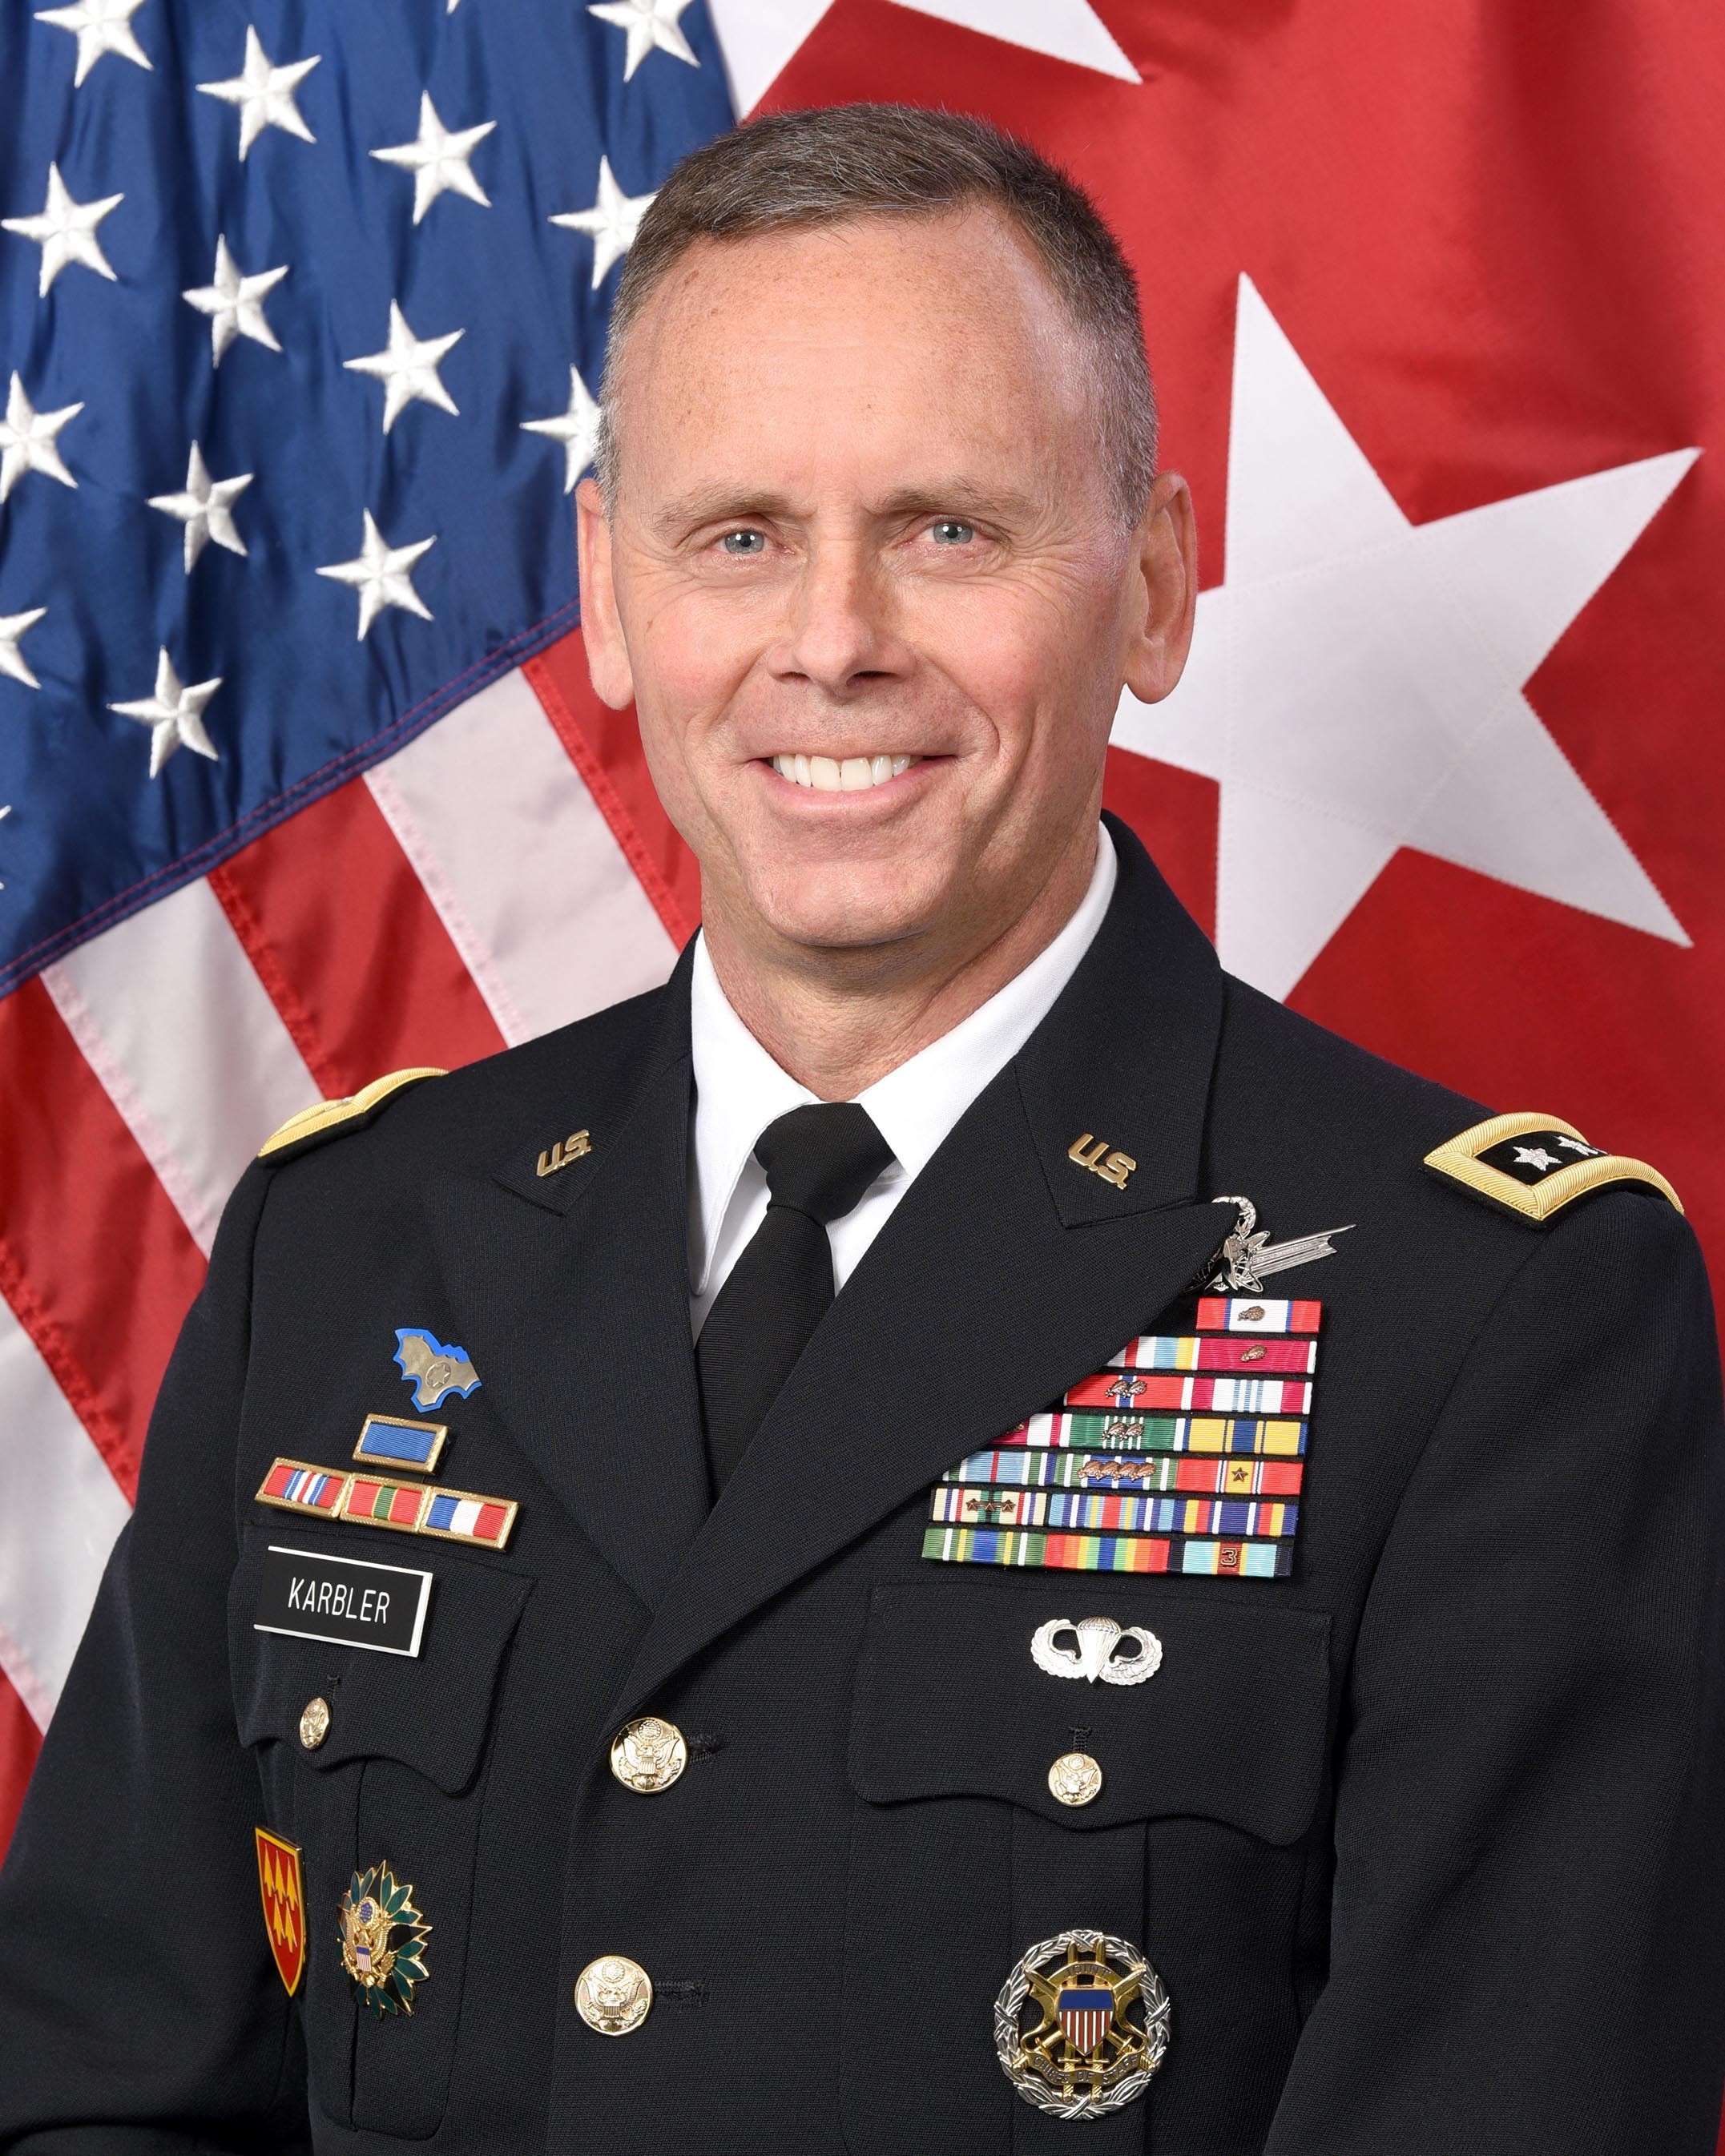 Lt. Gen. Daniel L. Karbler